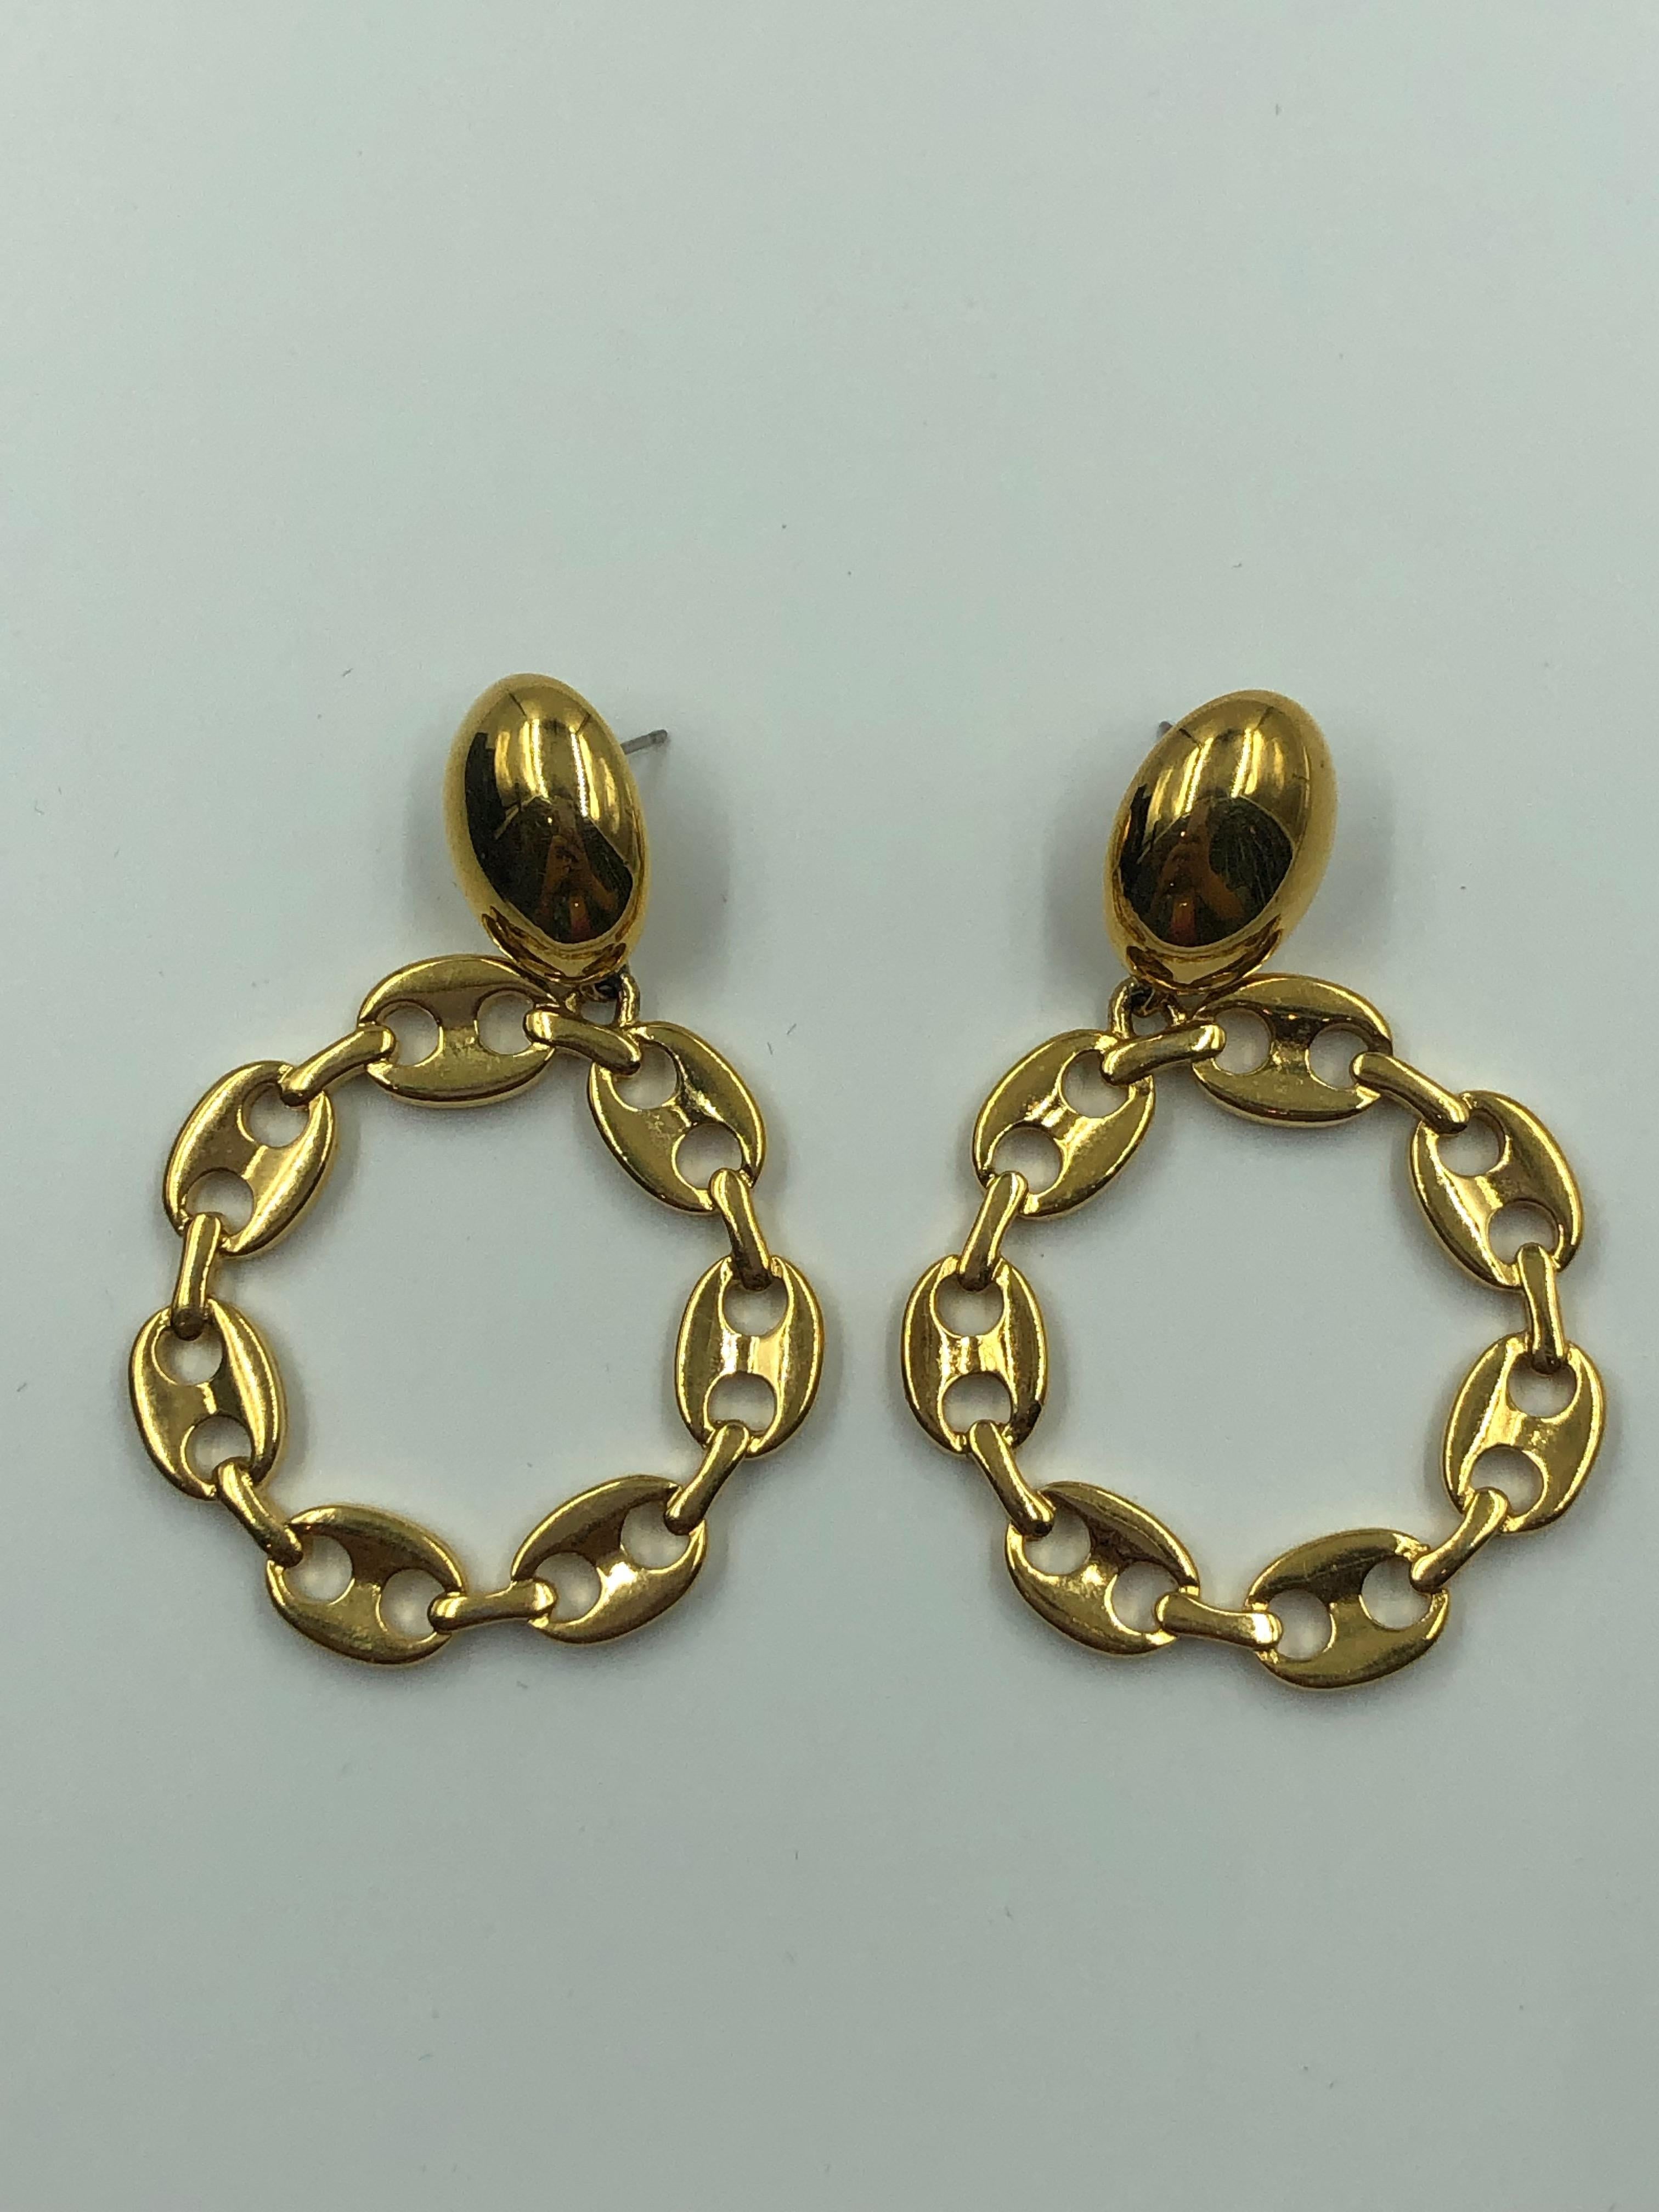 Boucles d'oreilles percées Monet Gucci Style Link Round Gold Tone

1.5